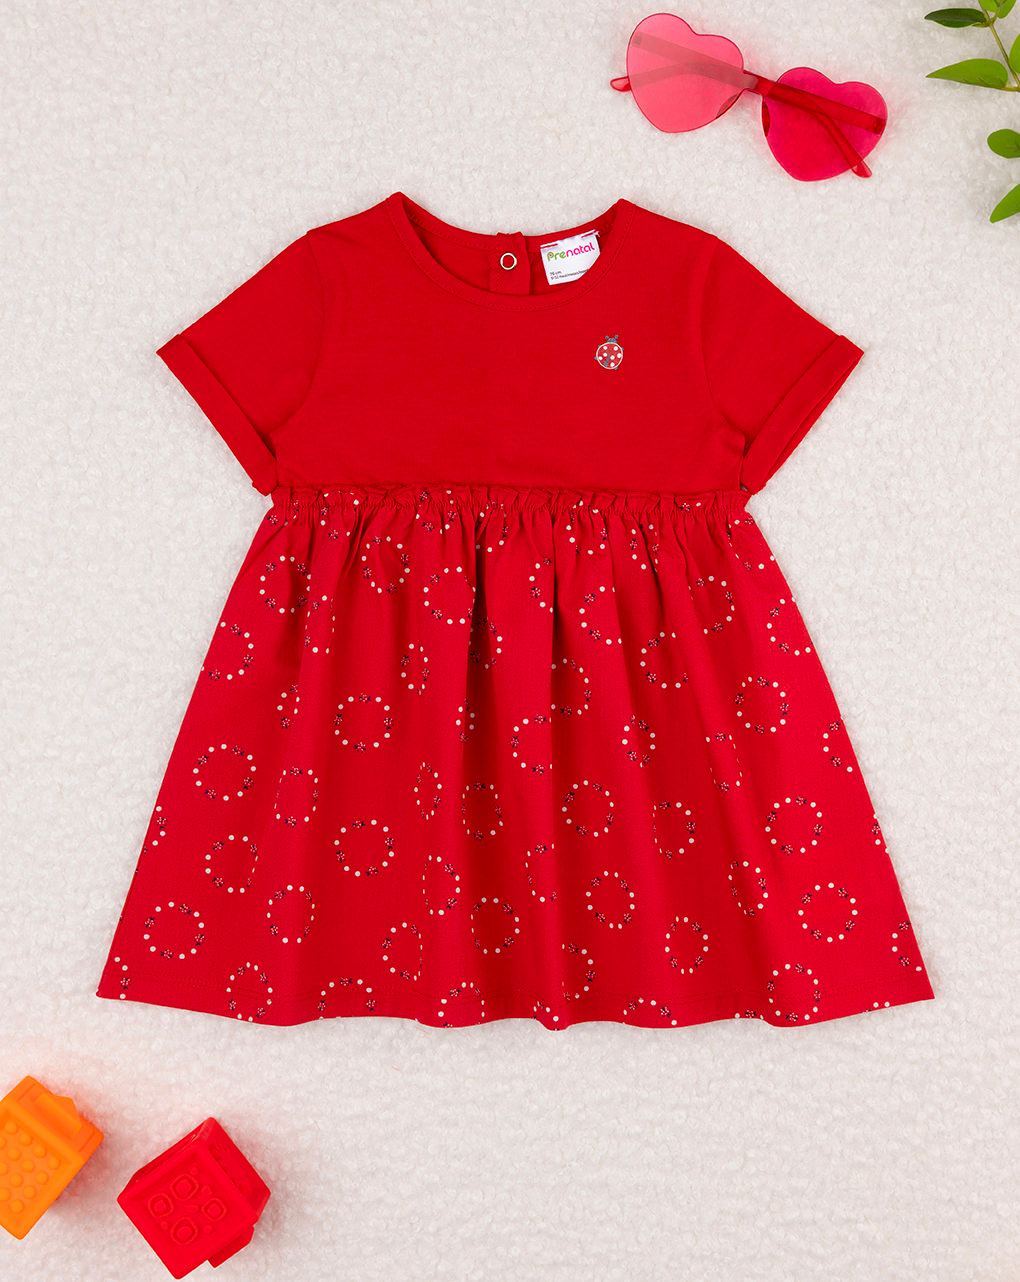 βρεφικό φόρεμα κόκκινο με πασχαλίτσες για κορίτσι